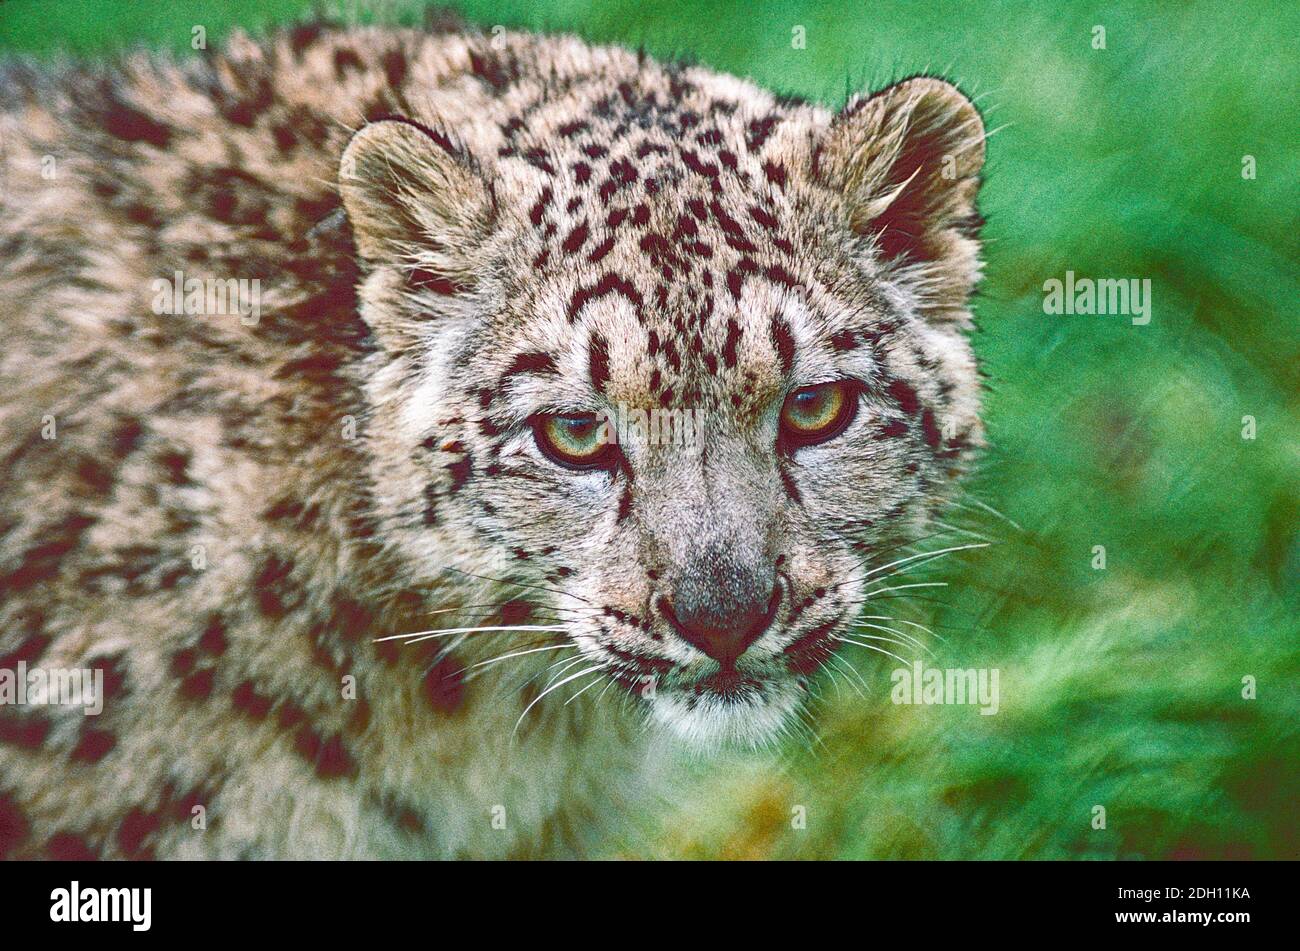 Leopardo di neve giovanile, (Panthera uncia,) provenienti dall'Asia centrale e meridionale elencati come vulnerabili. Foto Stock